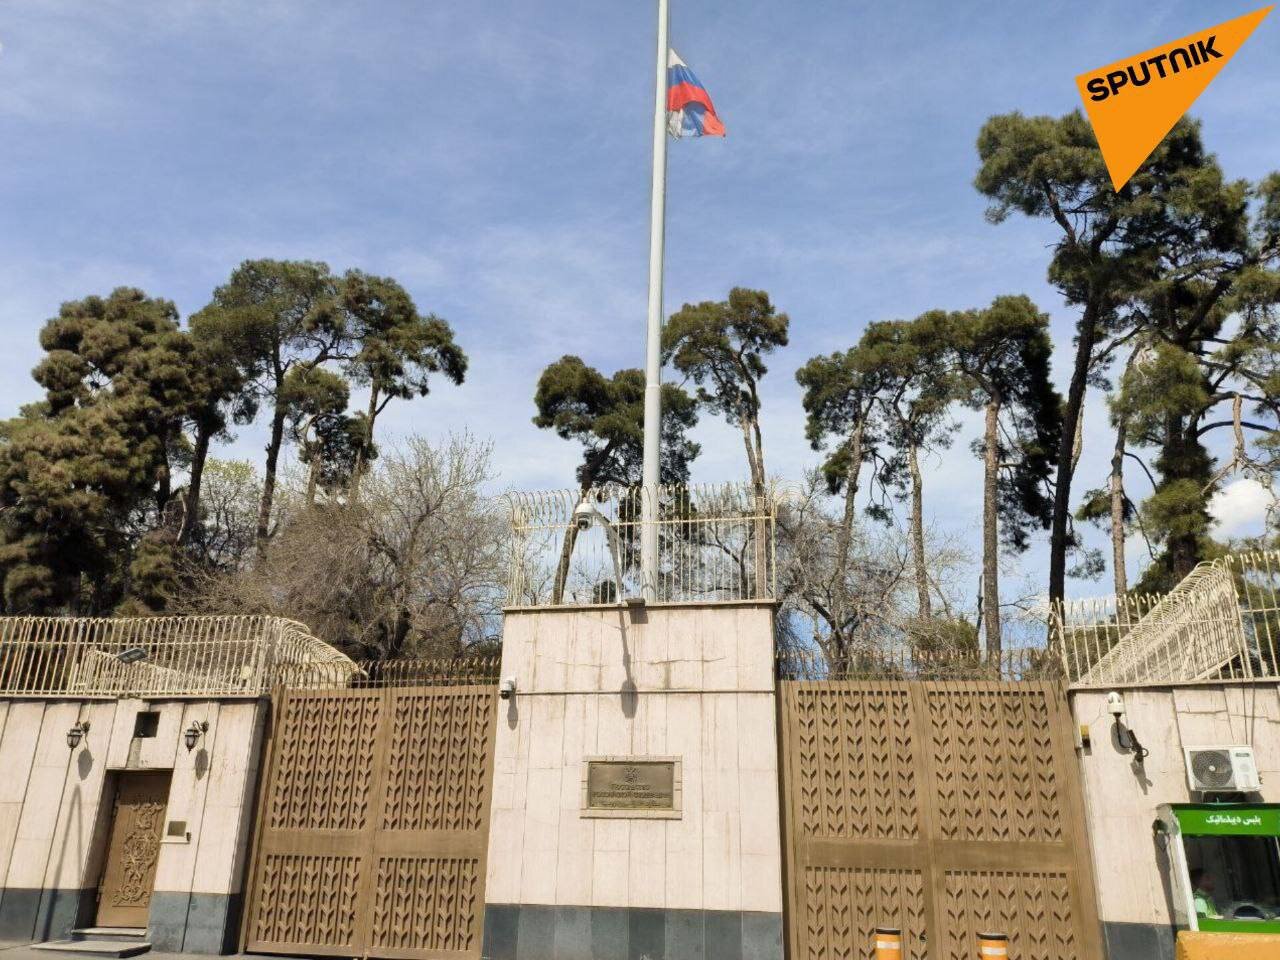 به احترام قربانیان روس پرچم روسیه در سفارت ایران نیمه برافراشته شد | عکس